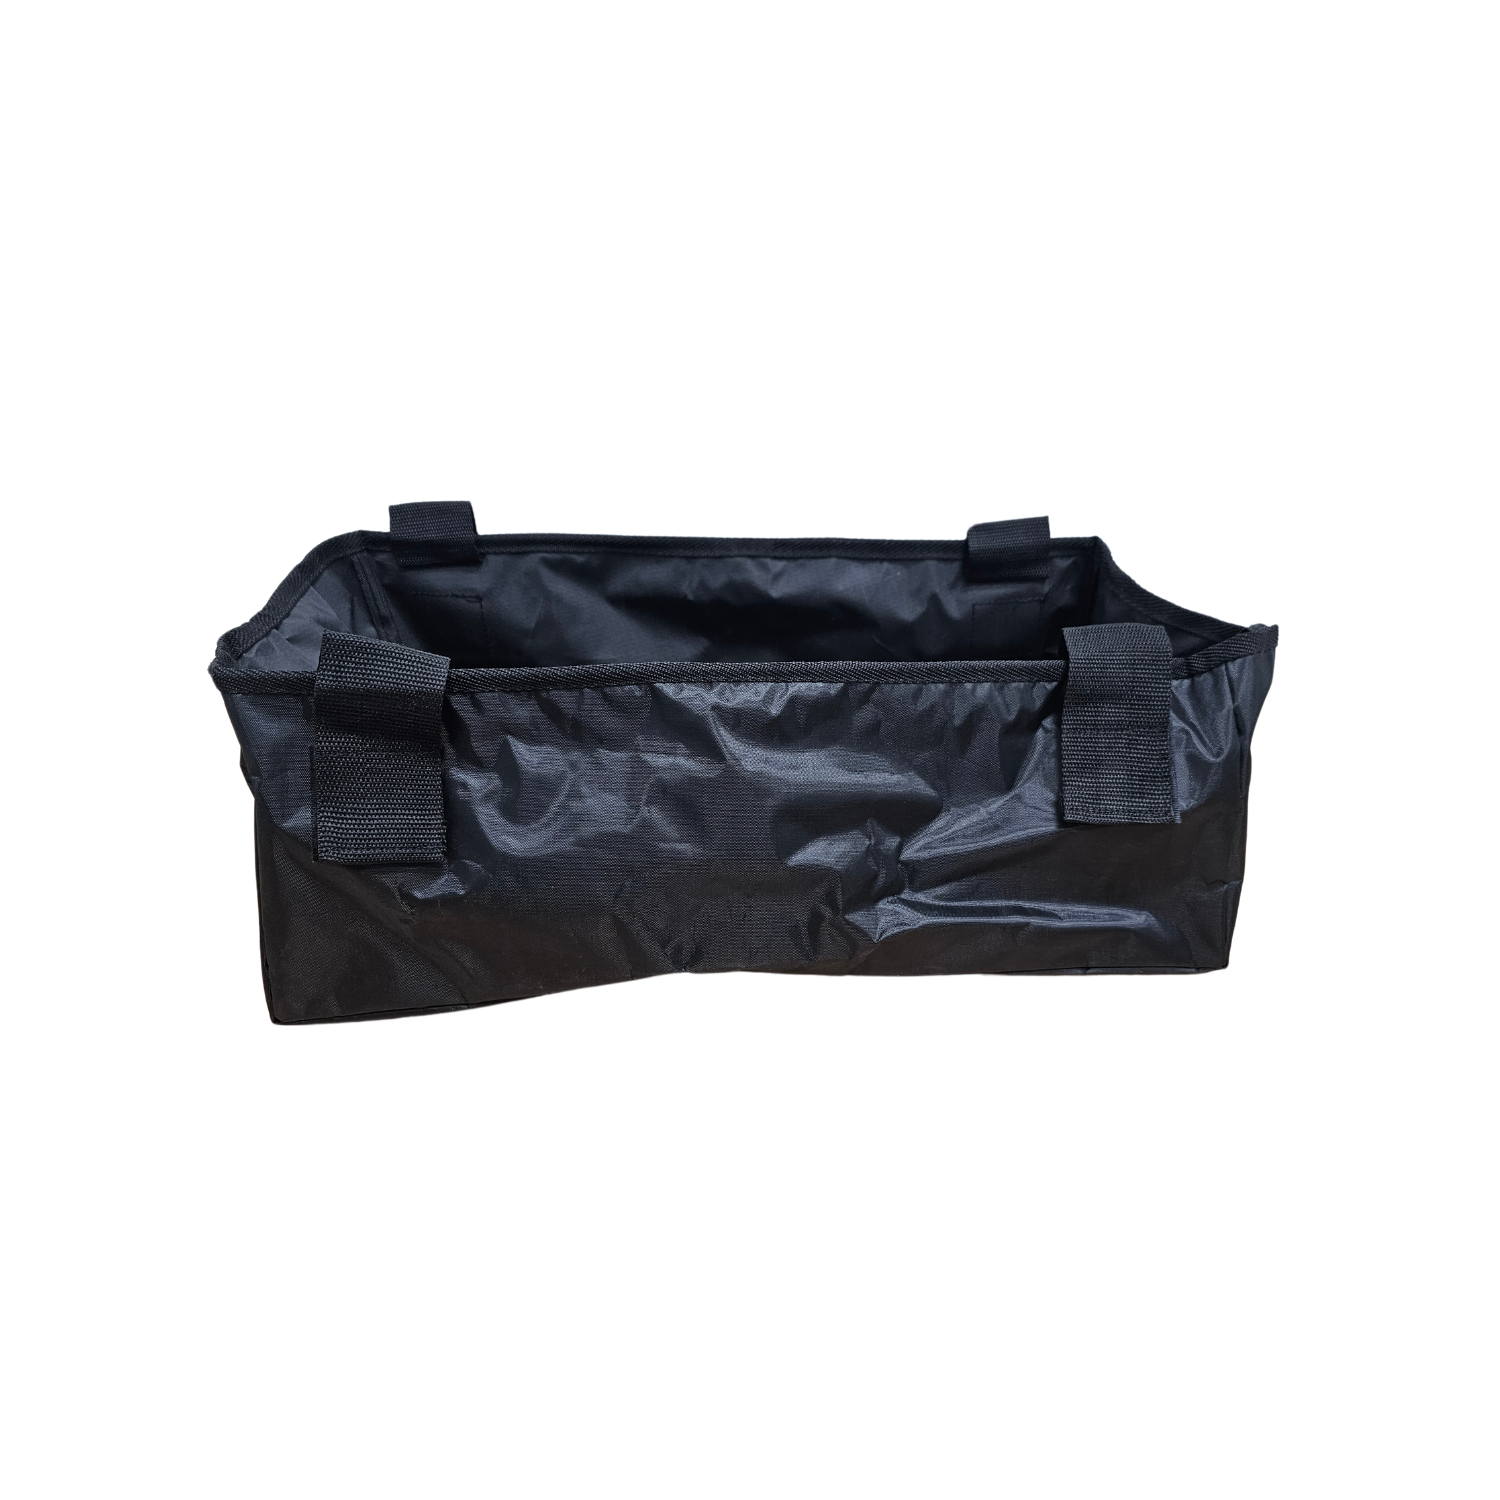 Replacement underseat walker bag